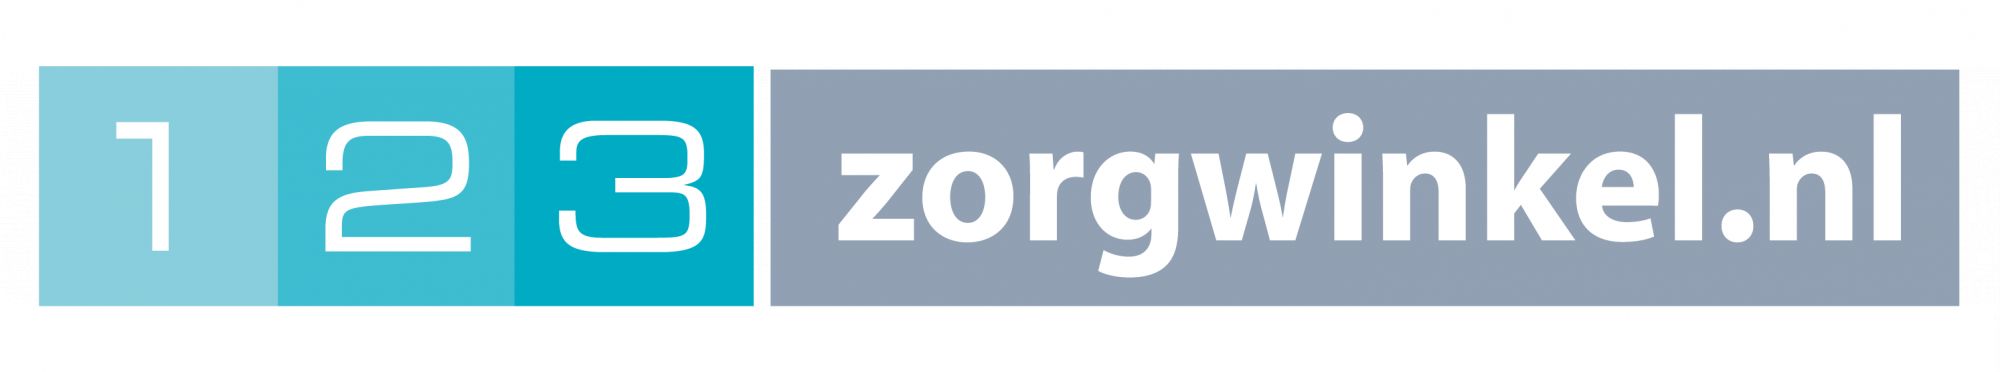 123zorgwinkel.nl logo